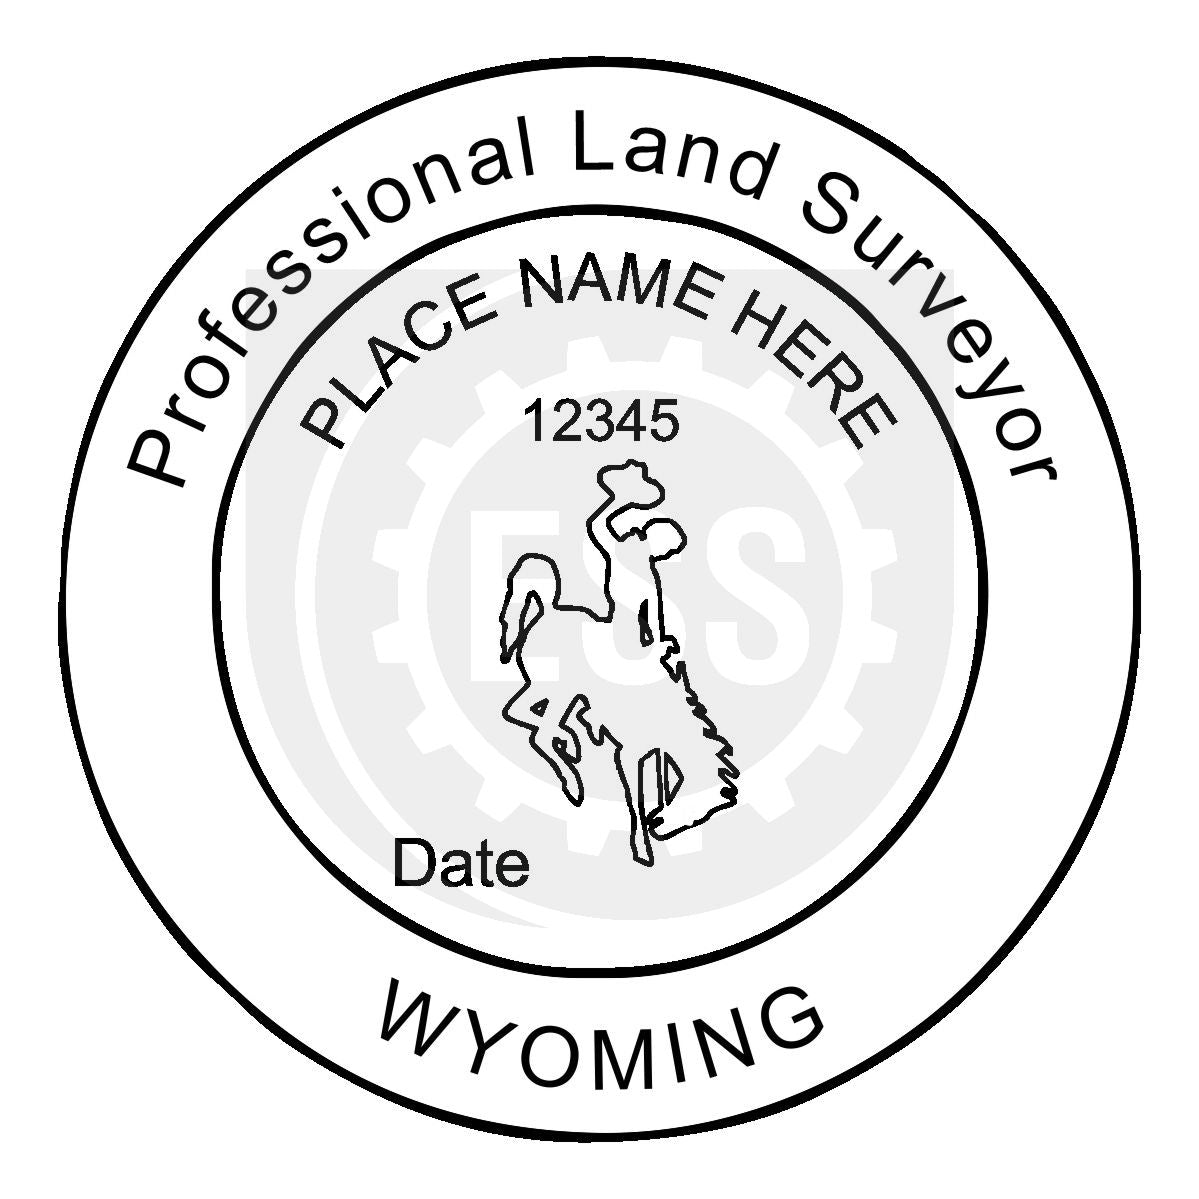 Wyoming Land Surveyor Seal Setup